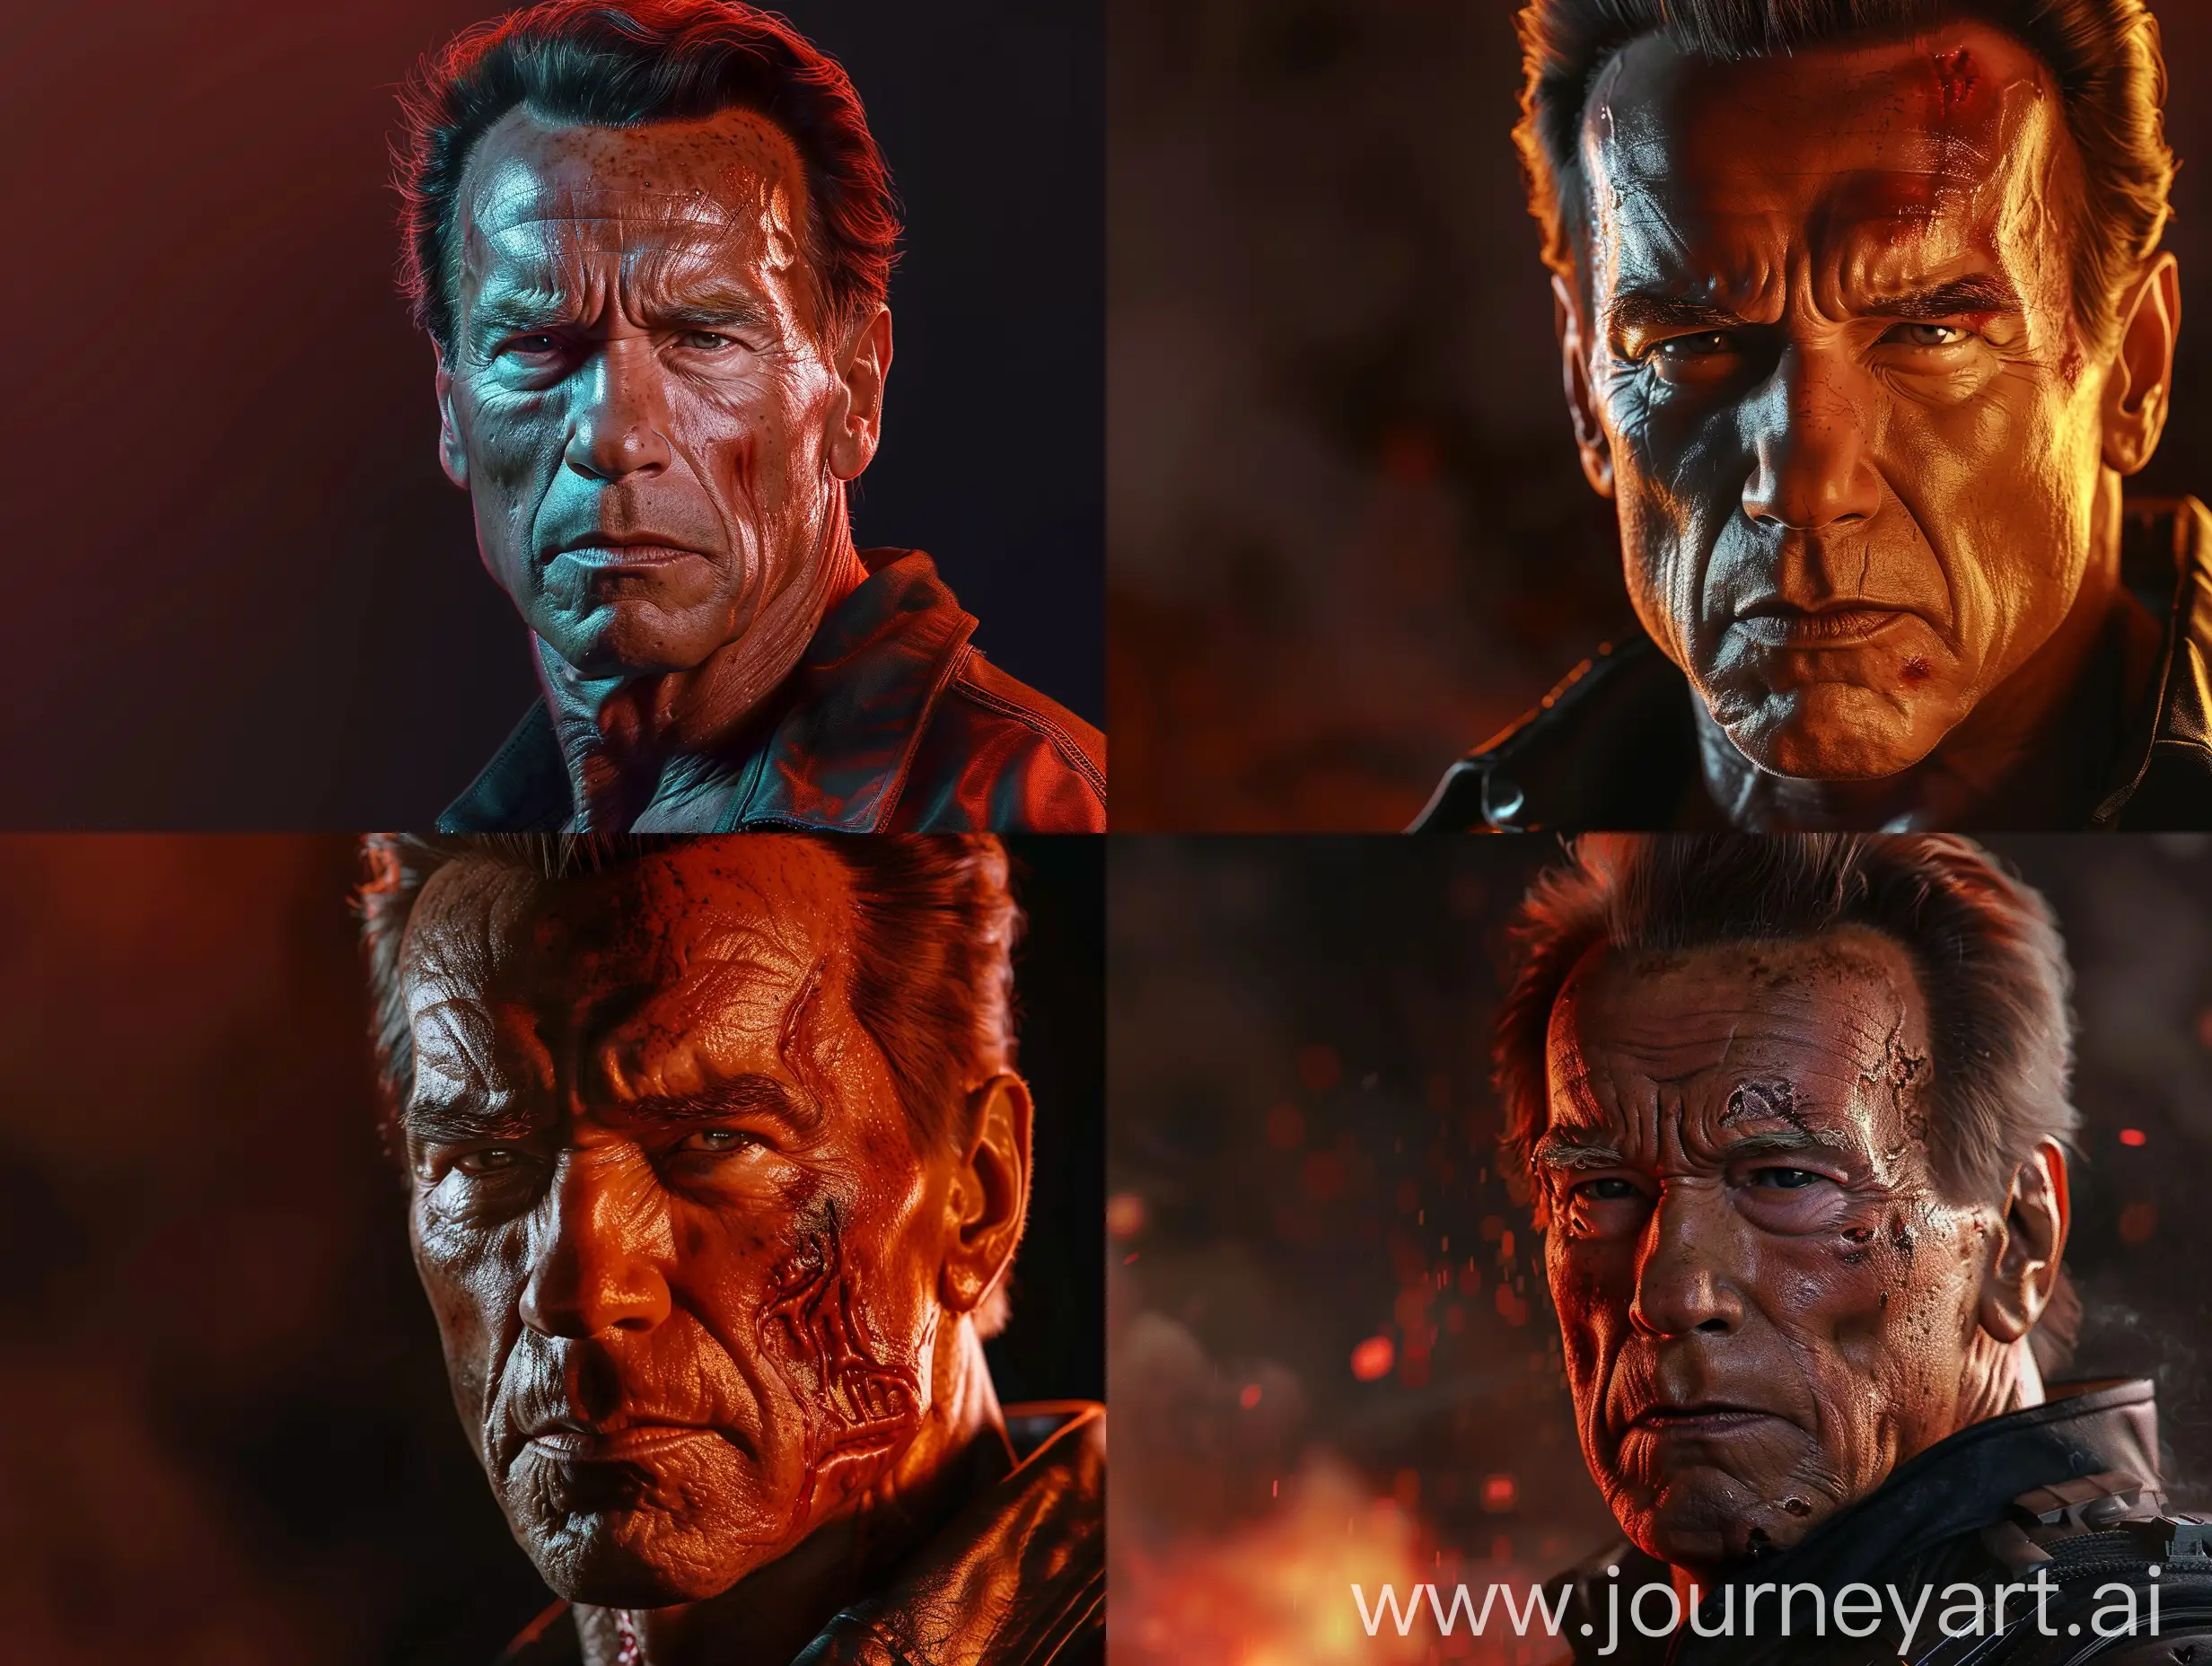 Sinister-Portrait-of-Arnold-Schwarzenegger-in-Dramatic-Lighting